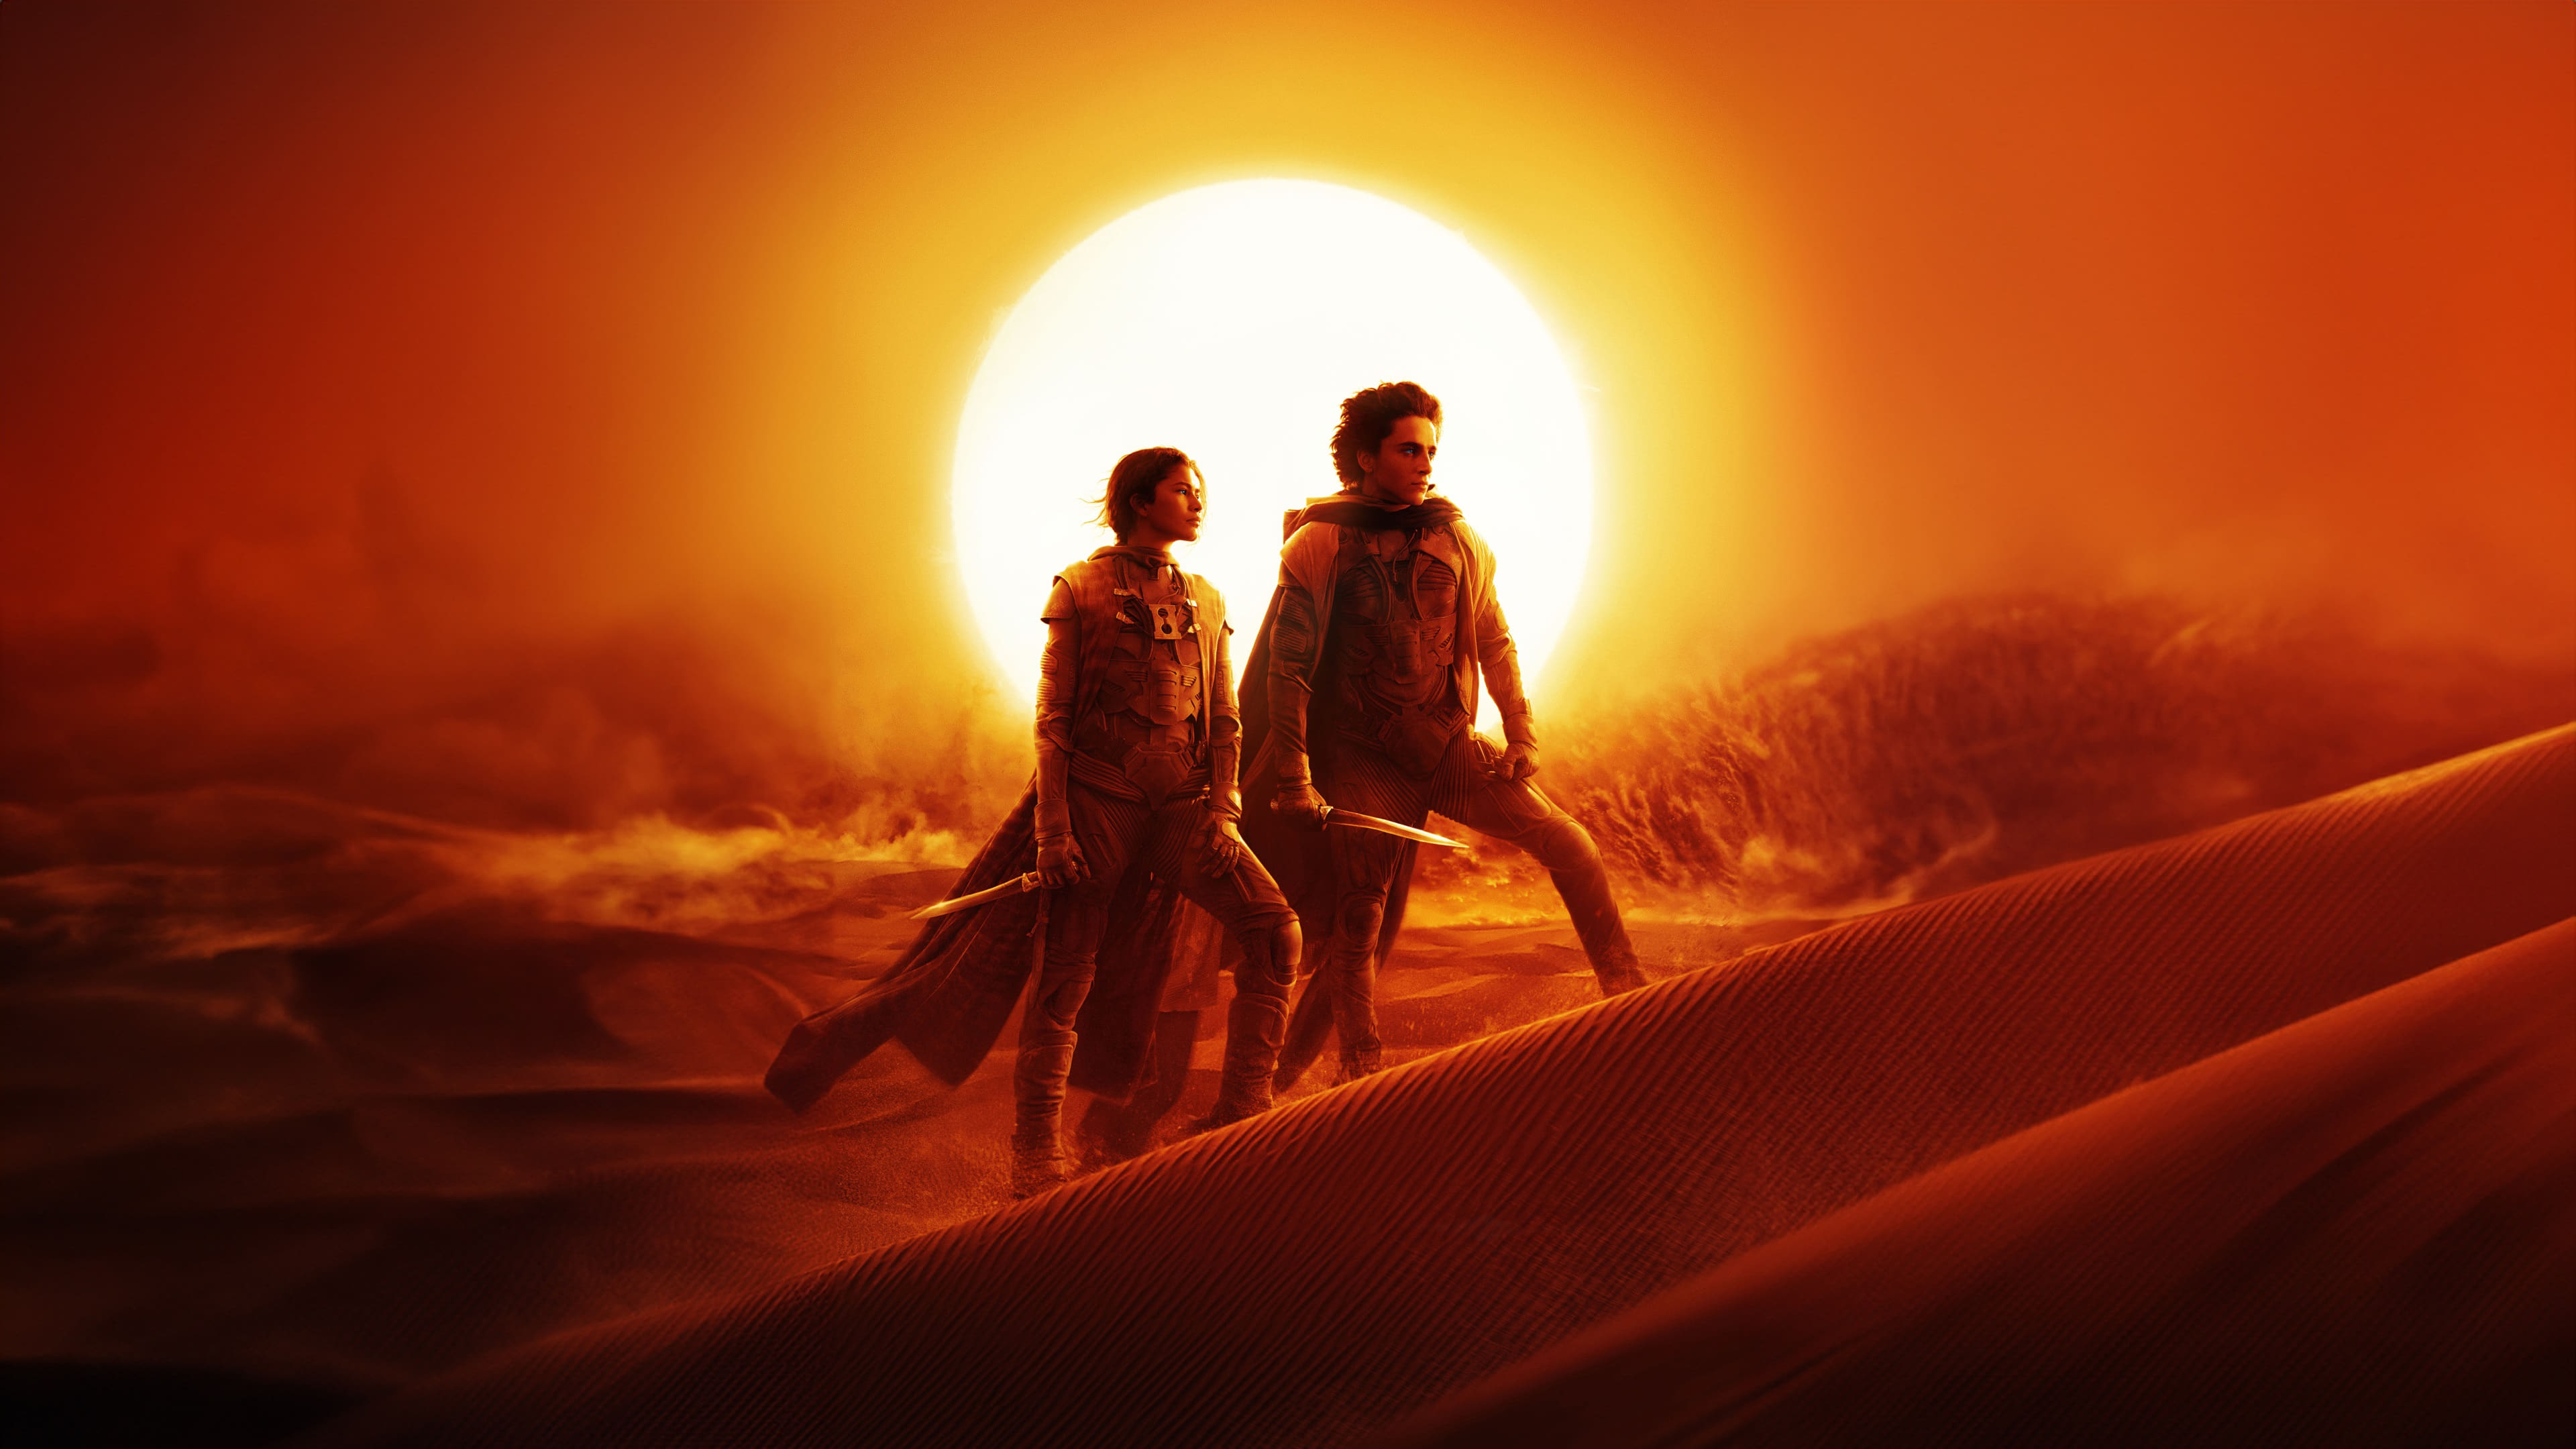 Dune - Deuxième partie (2024)